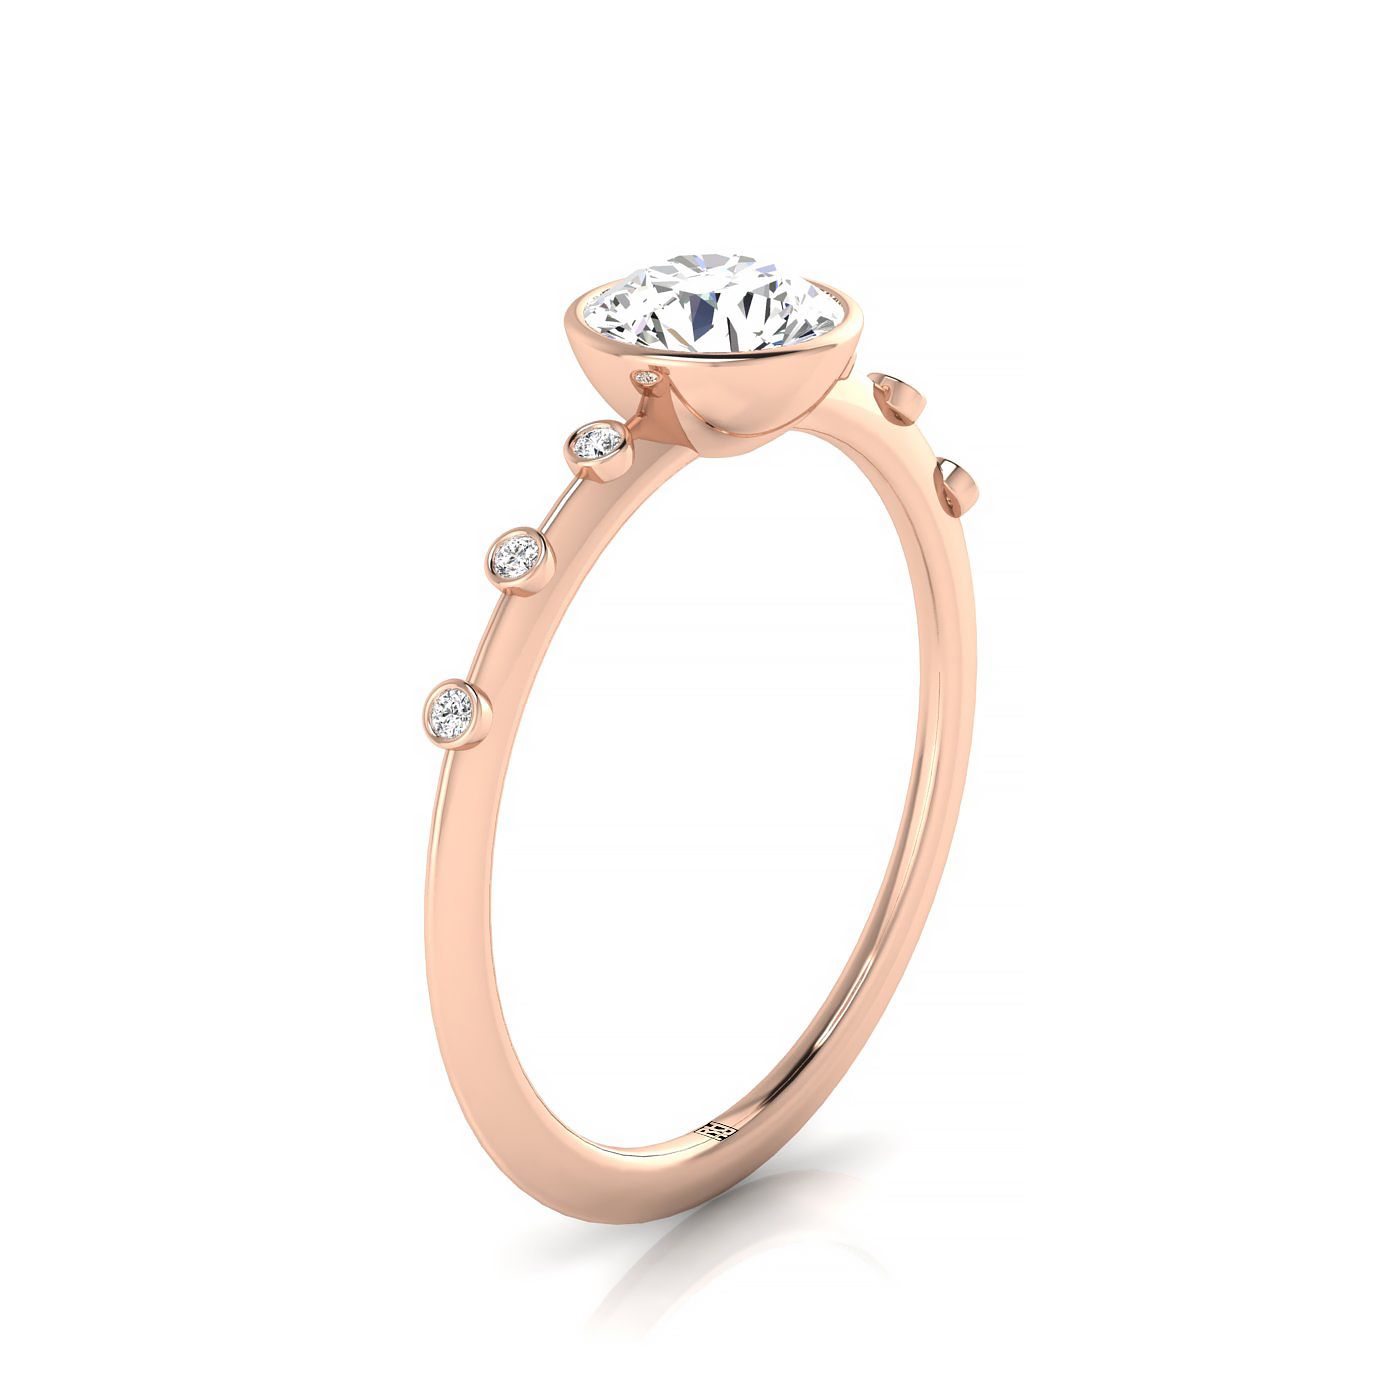 14kr Bezel Set Round Engagement Ring With 6 Bezel Set Round Diamonds On Shank